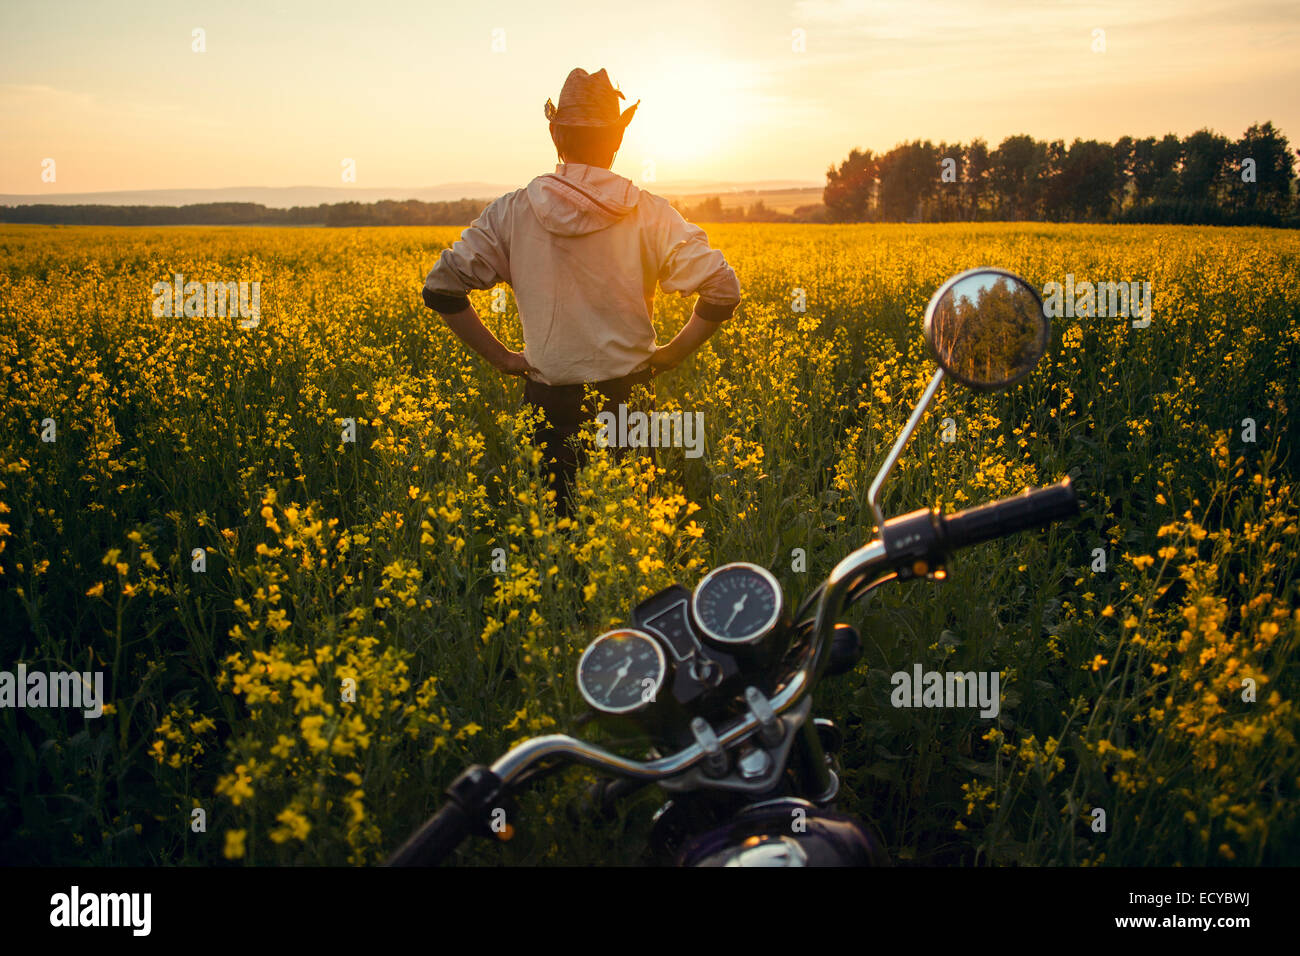 Mari homme debout près de moto en champ de fleurs Banque D'Images